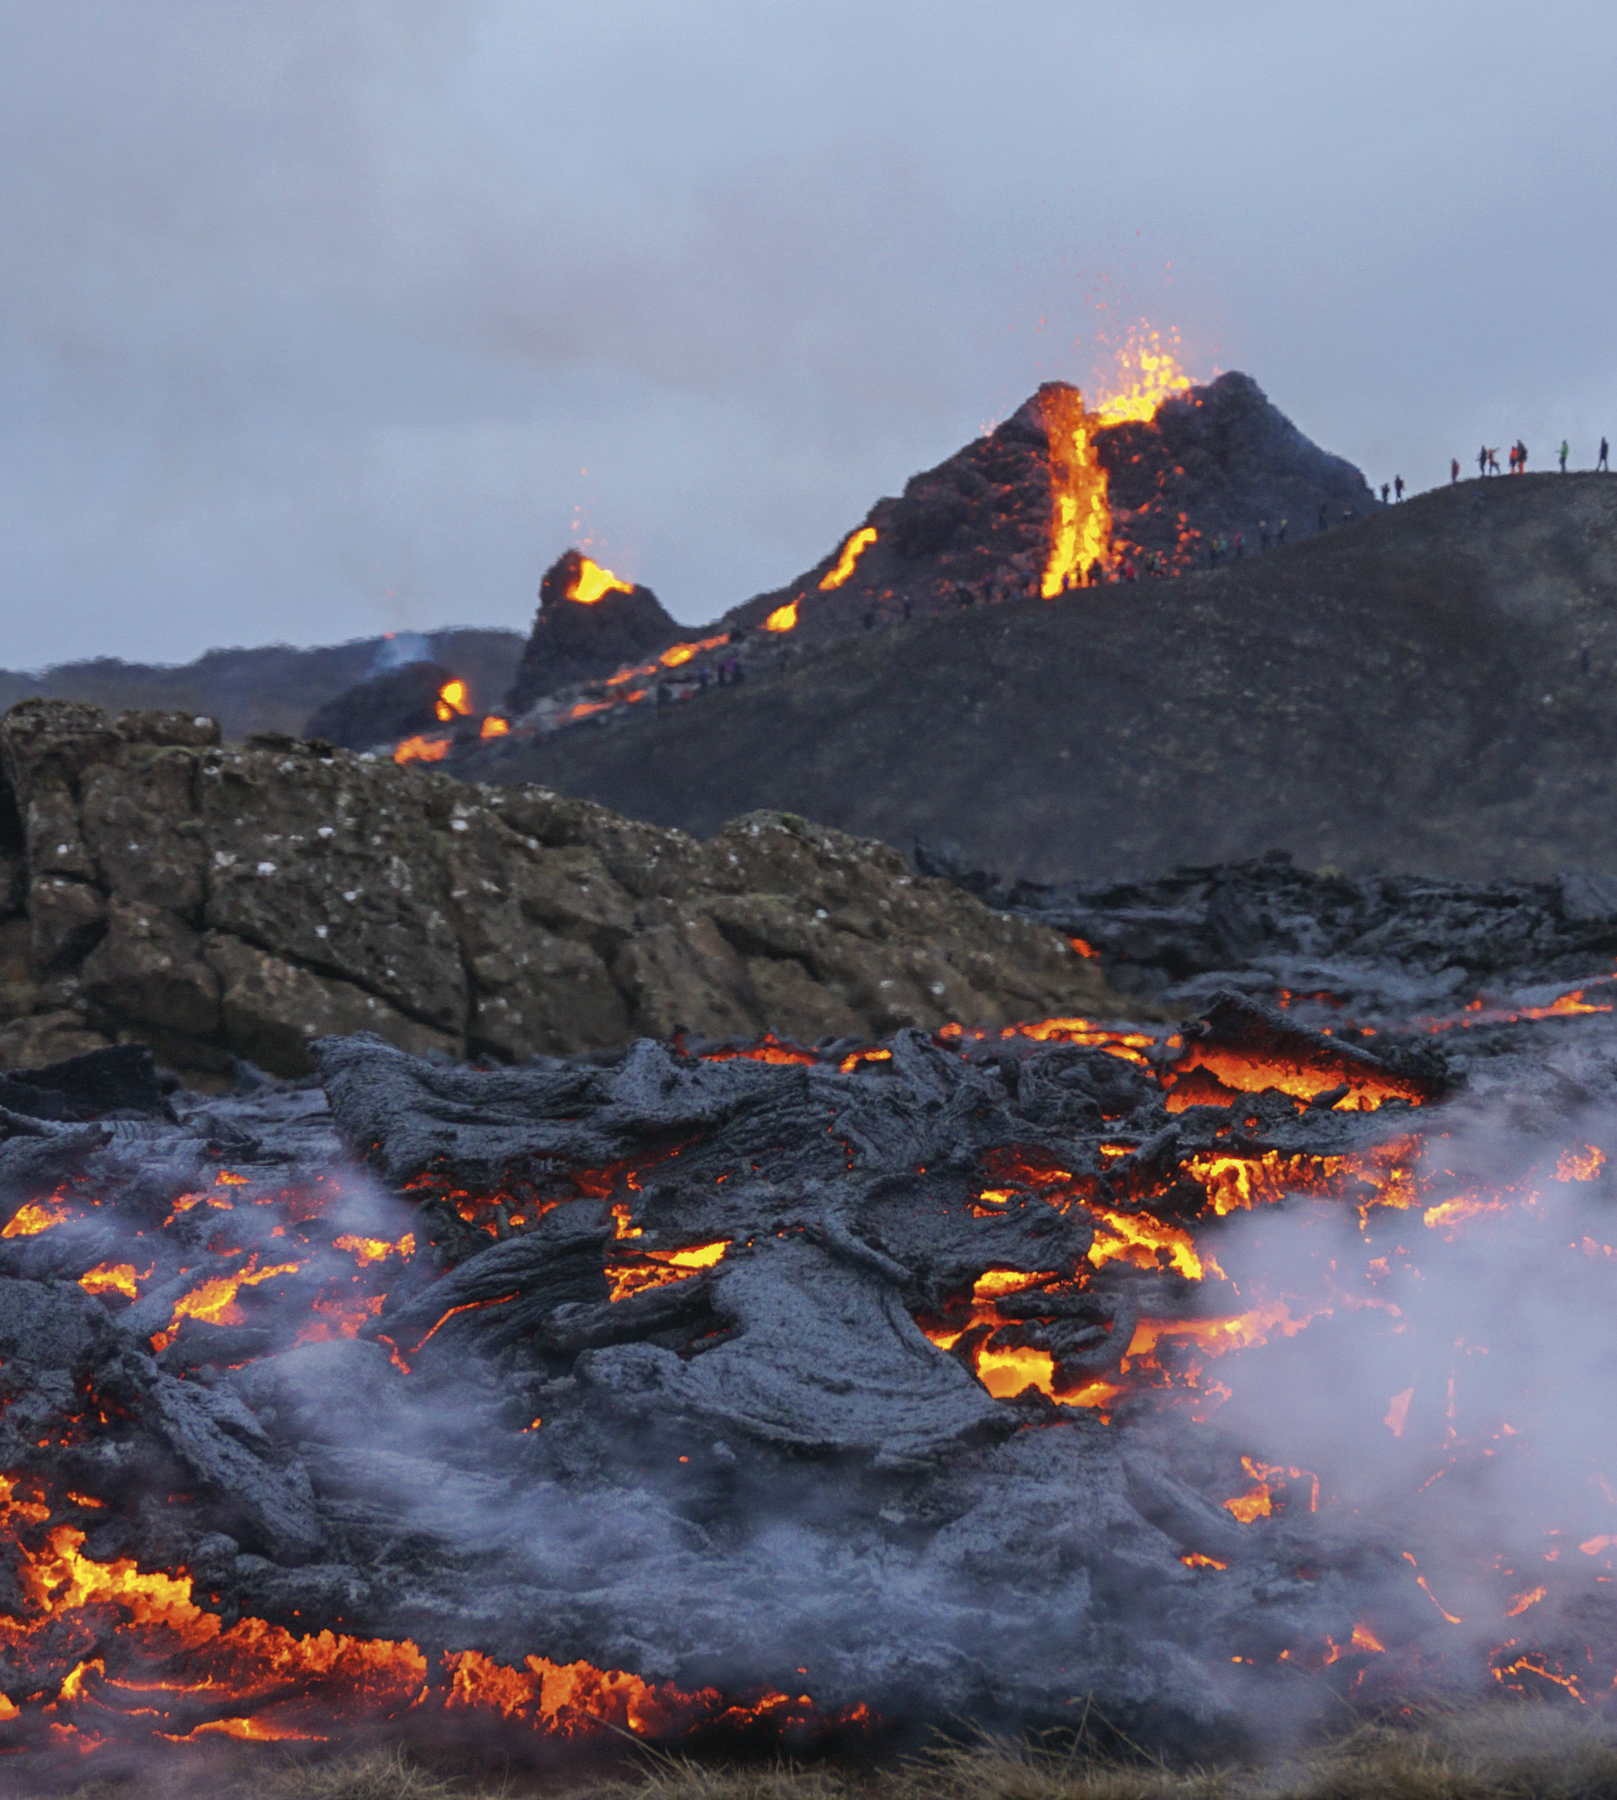 Fotografia. Destaque para um vulcão em erupção. Há lava sendo expelida e no solo onde está esfriando, em uma coloração acinzentada.